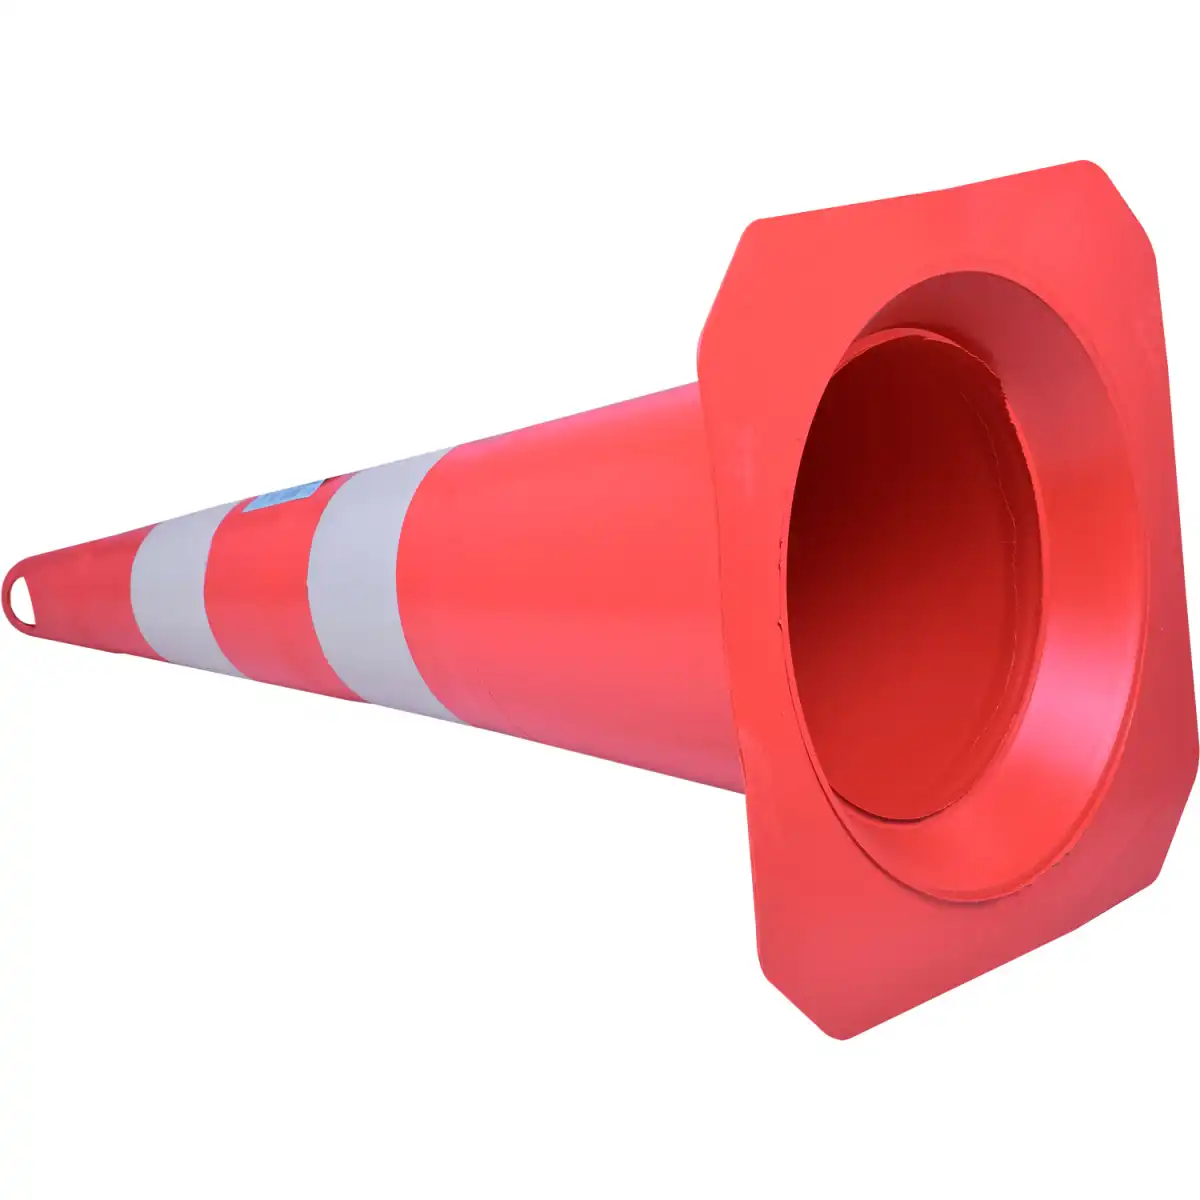 Cone para Sinalização em PVC 75cm Laranja e Branco Worker